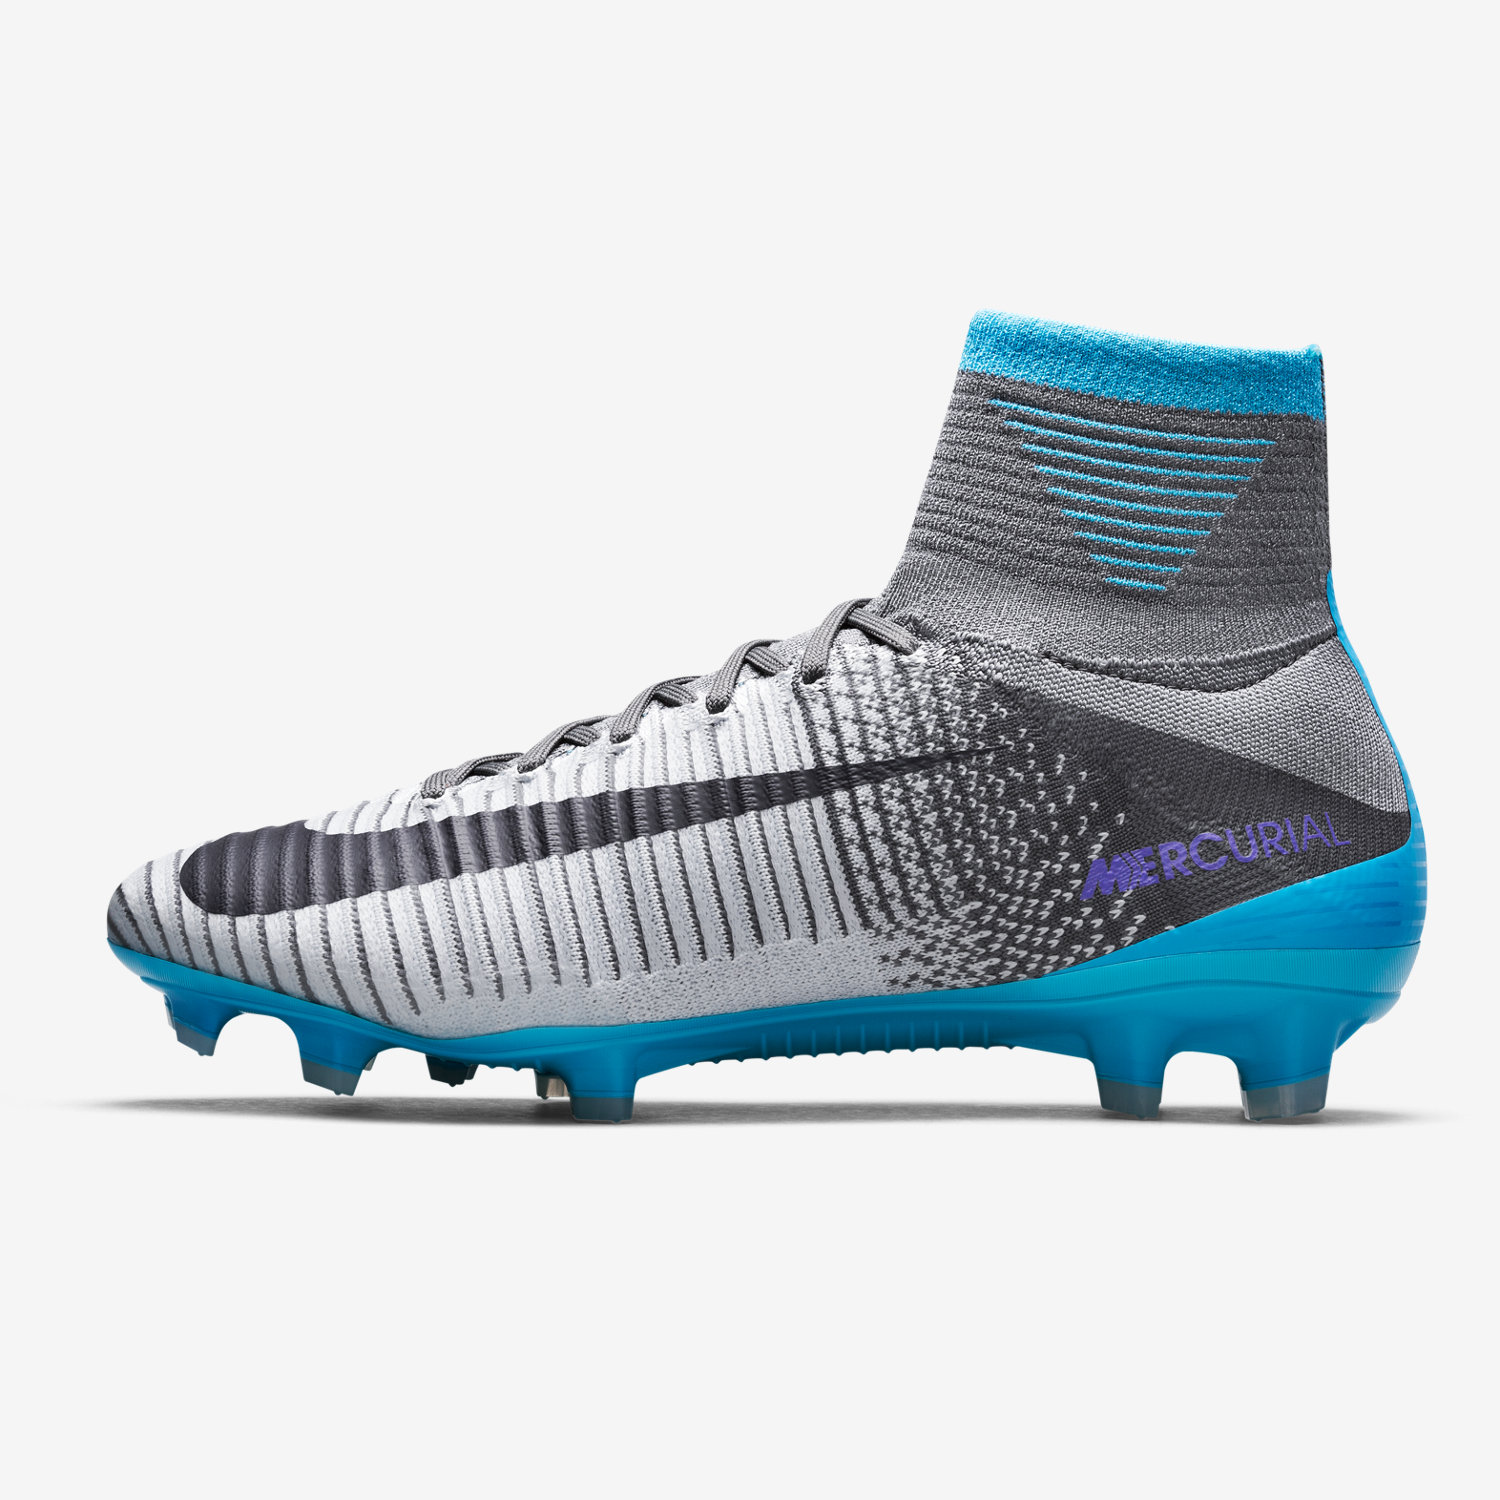 ποδοσφαιρικα παπουτσια γυναικεια Nike Mercurial Superfly V FG γκρι/γκρι/μπλε/μωβ 67485961VY